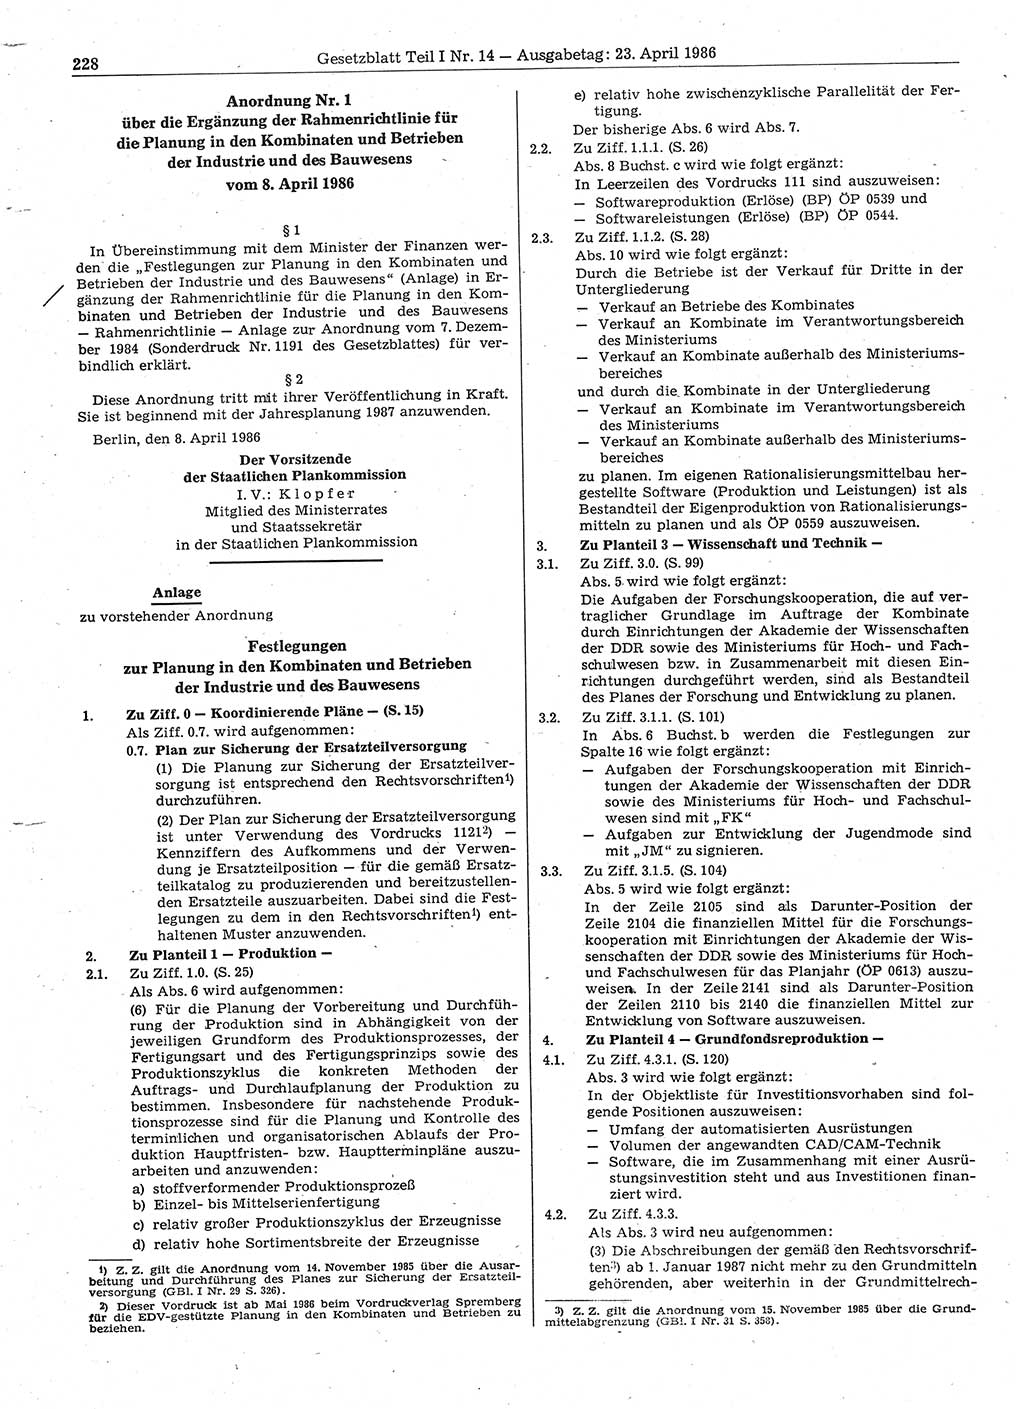 Gesetzblatt (GBl.) der Deutschen Demokratischen Republik (DDR) Teil Ⅰ 1986, Seite 228 (GBl. DDR Ⅰ 1986, S. 228)